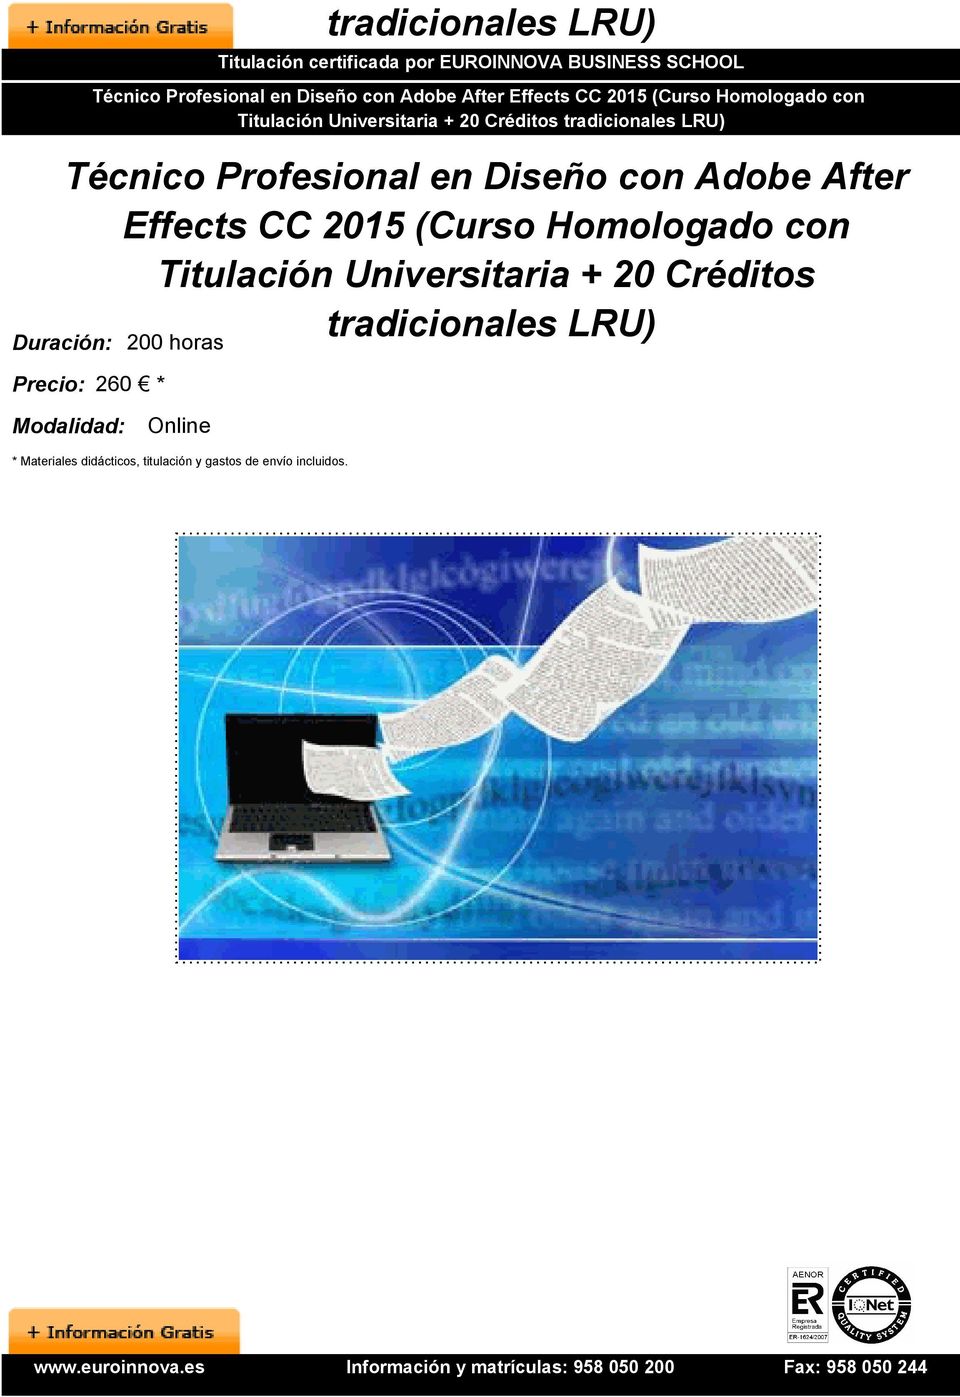 Effects CC 2015 (Curso Homologado con Titulación Universitaria + 20 Créditos tradicionales LRU)